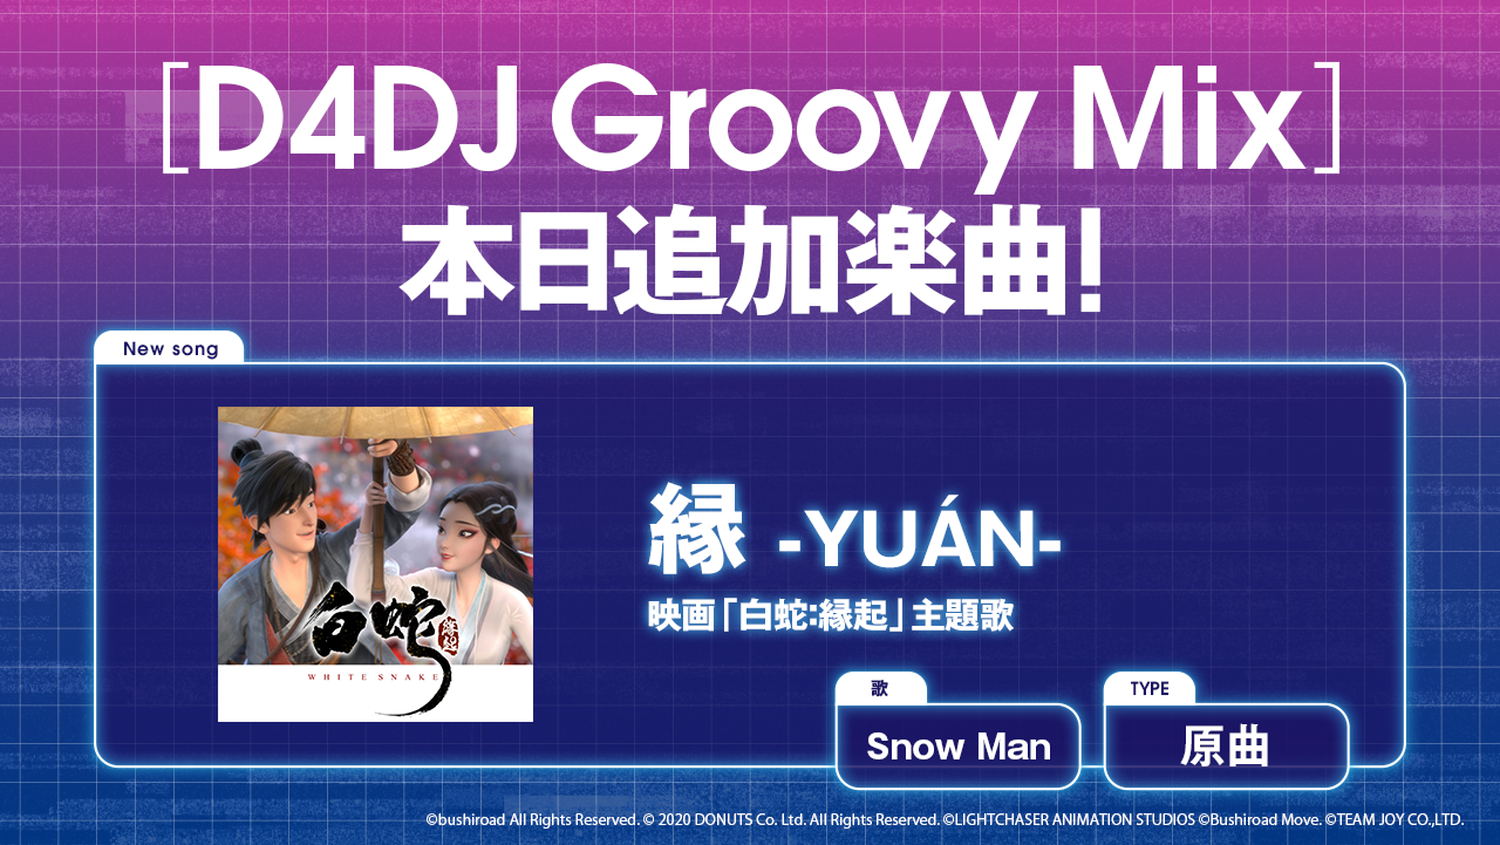 D4dj Groovy Mix ジャニーズ Snowman の新曲 縁 Yuan 原曲 実装 ゲーム内でpvも放映 アニメ アニメ